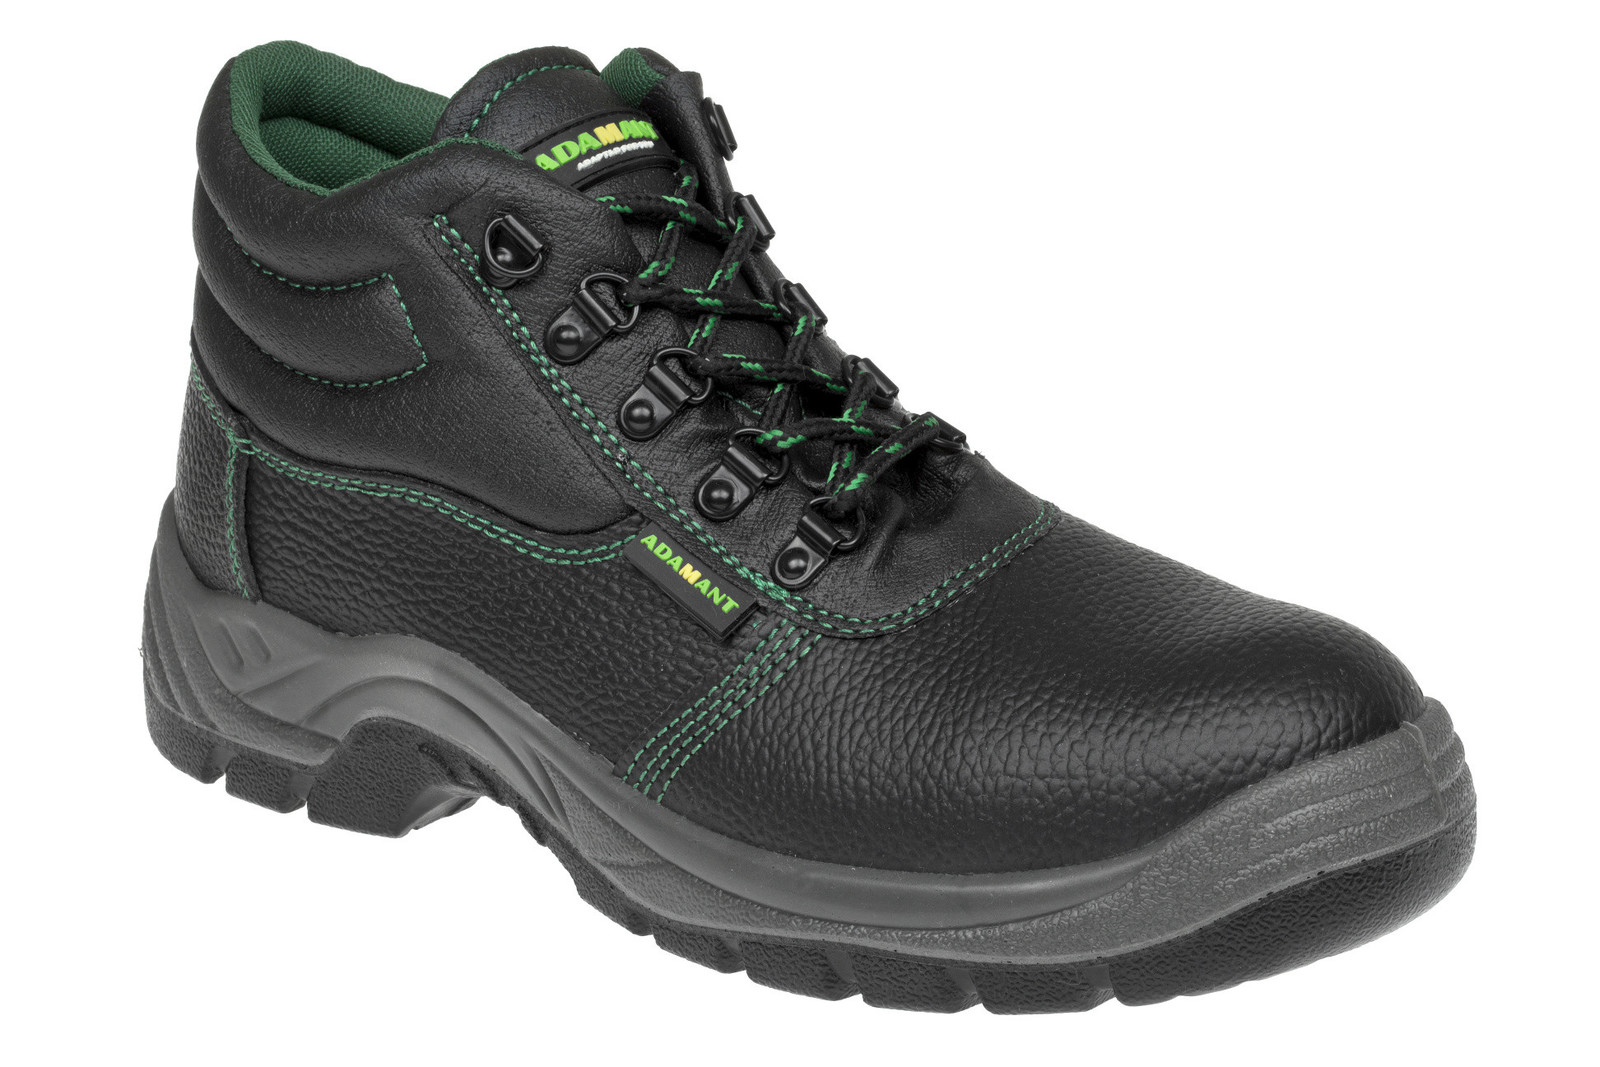 Bezpečnostná obuv Adamant Classic S1P - veľkosť: 41, farba: čierna